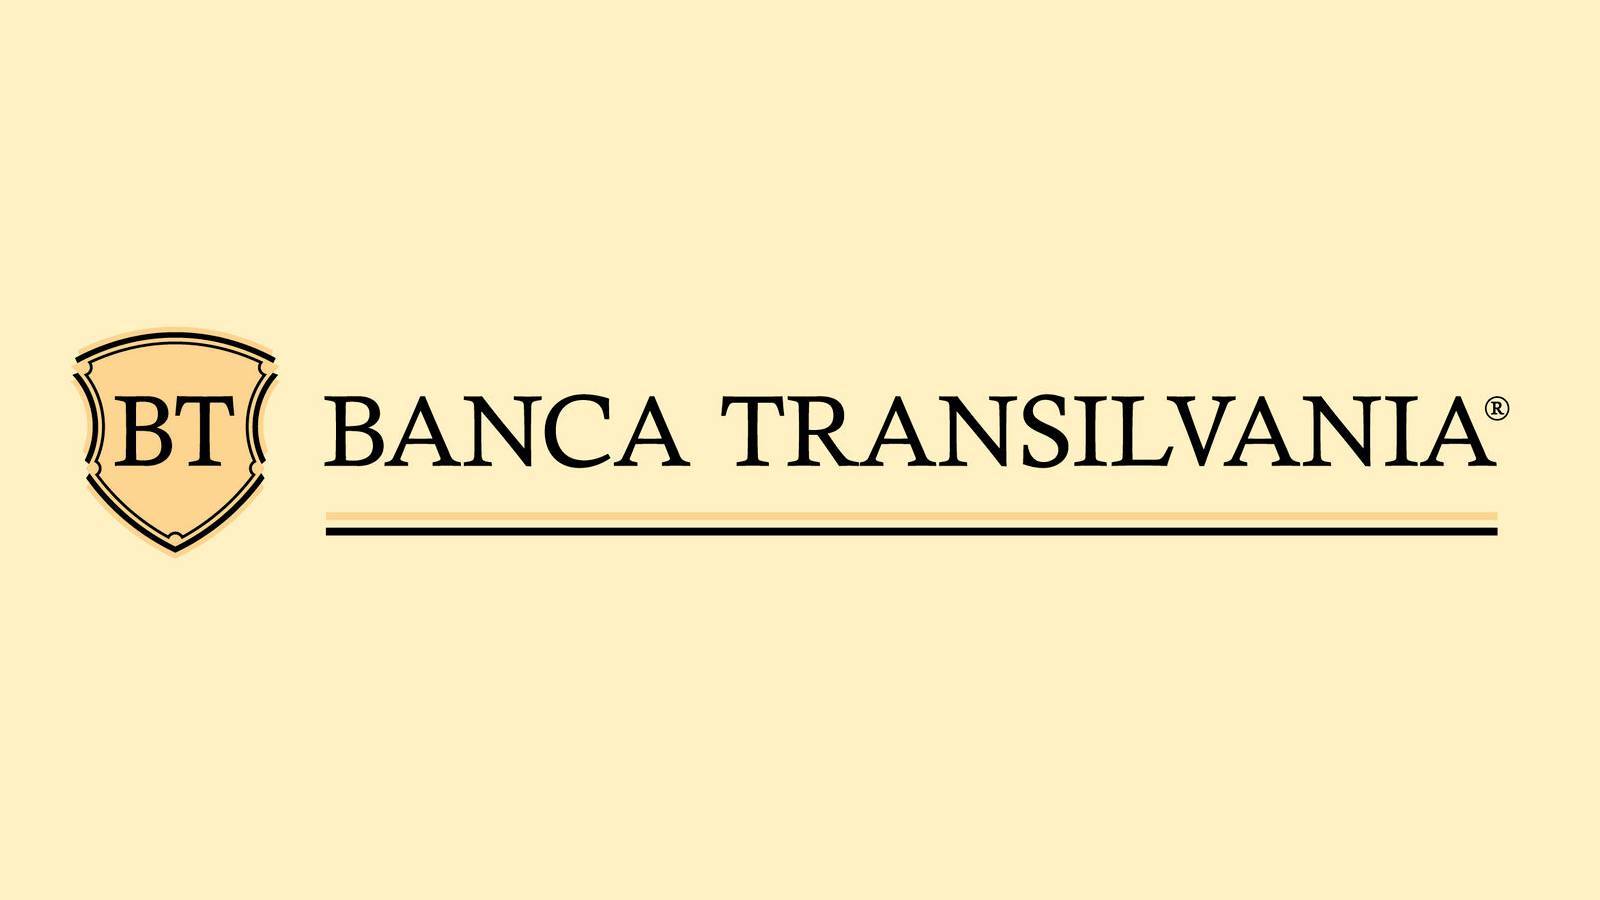 BANCA Transilvania VIKTIGA officiella förklaringar Observera alla rumänska kunder